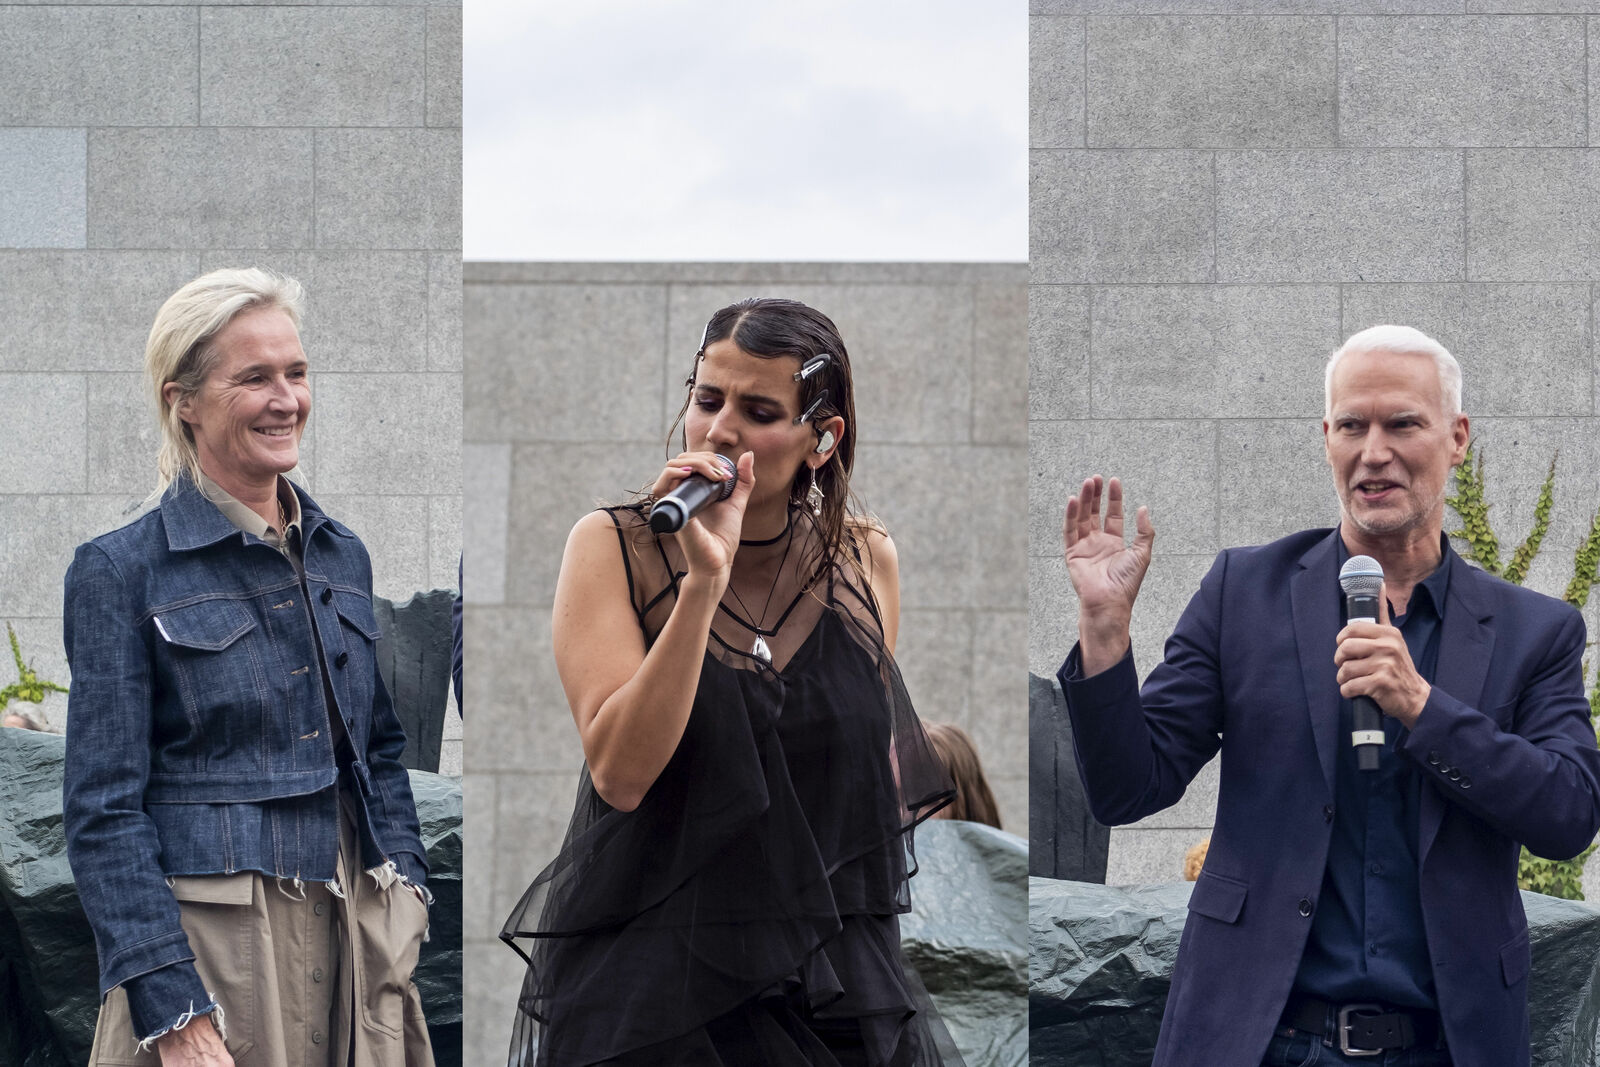 Benita von Maltzahn, Leiterin des Volkswagen Kulturengagements und Museumsdirektor Klaus Biesenbach eröffneten das Konzert mit der Künstlerin MARYAM